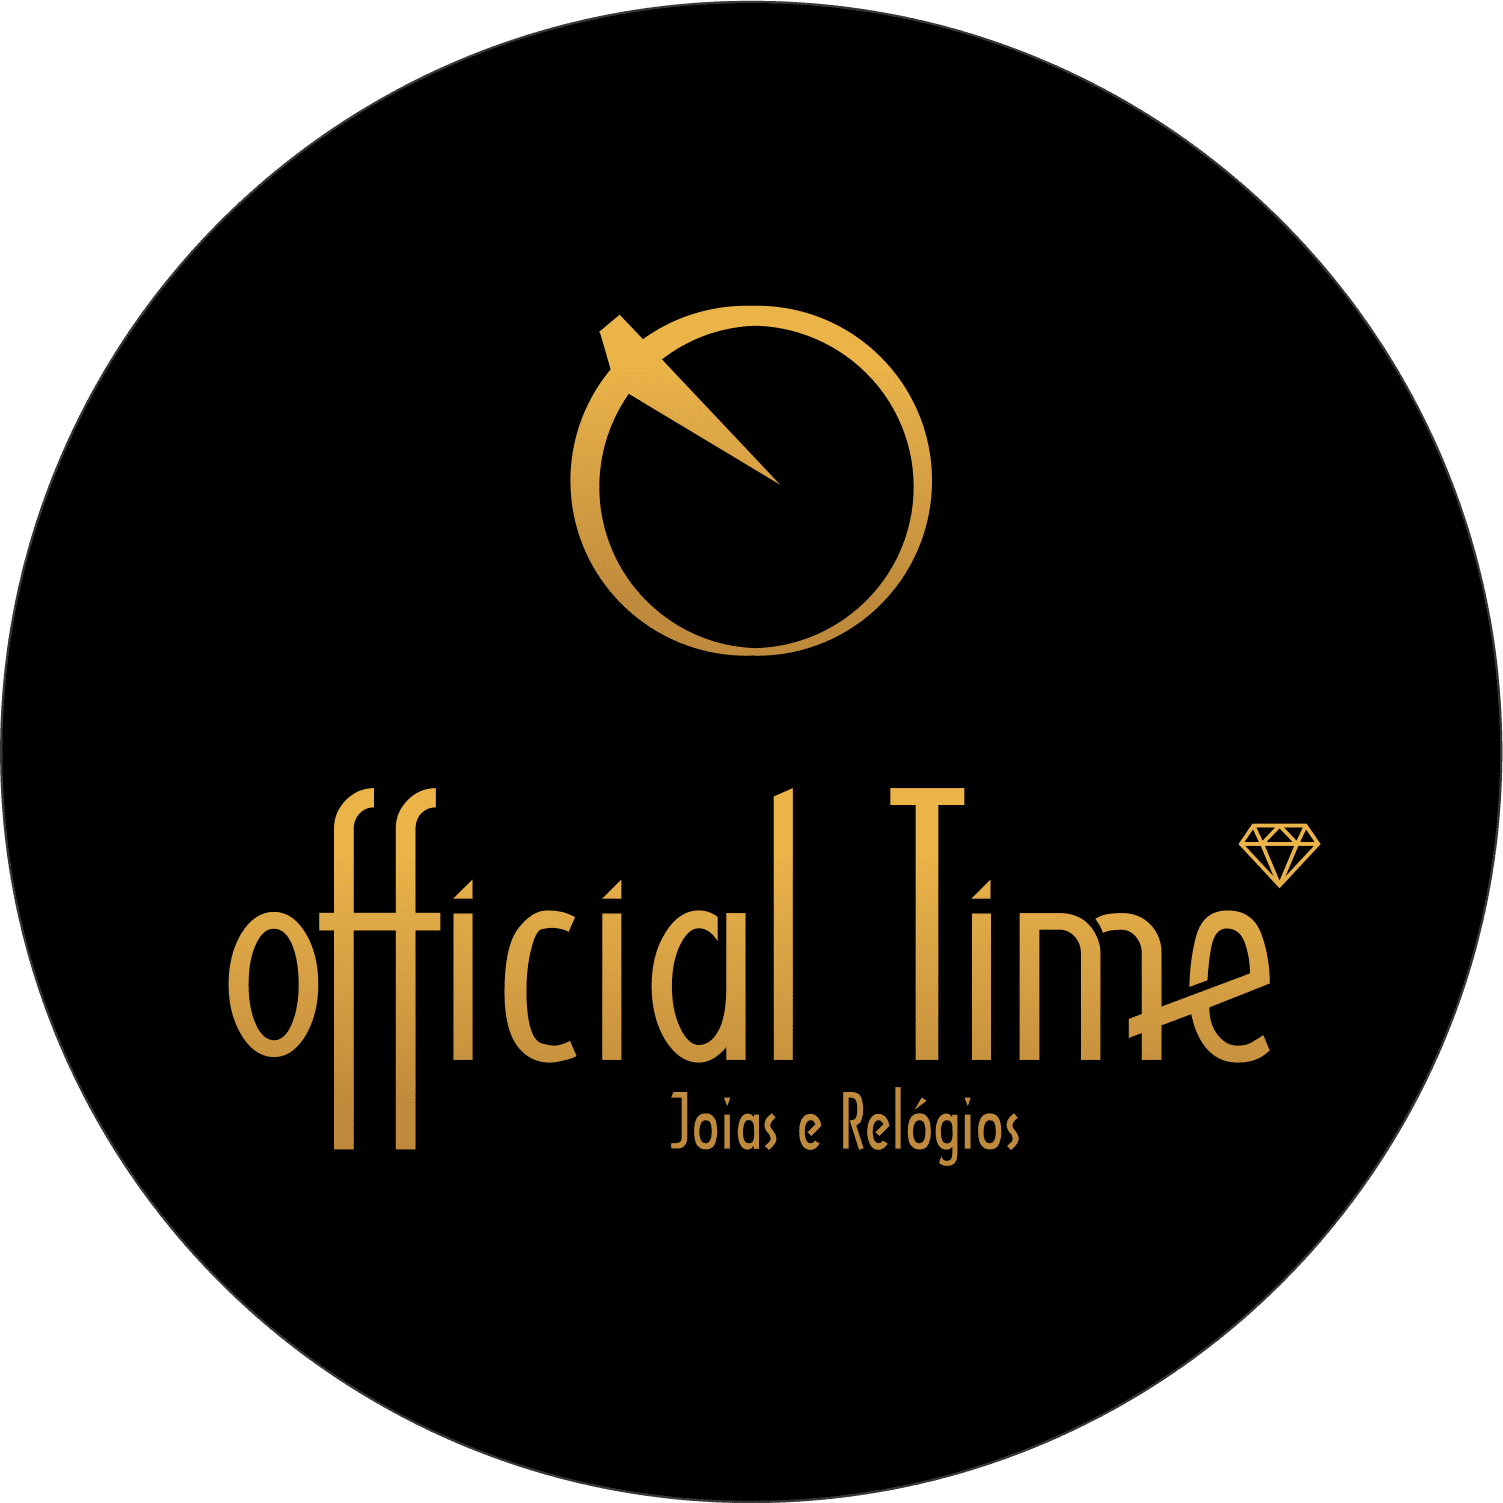 (c) Officialtime.com.br